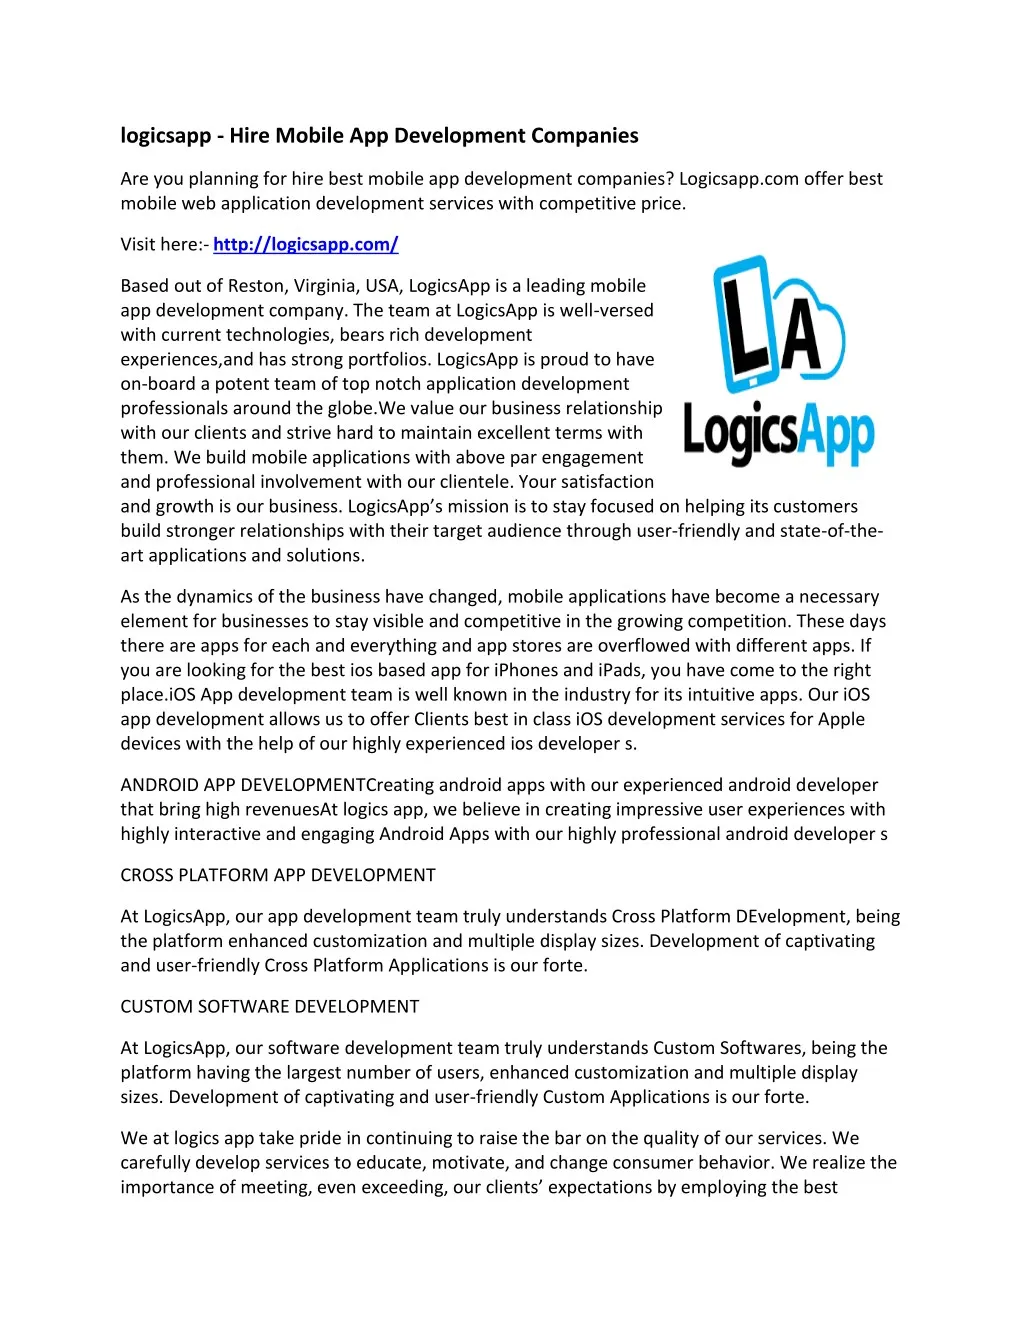 logicsapp hire mobile app development companies